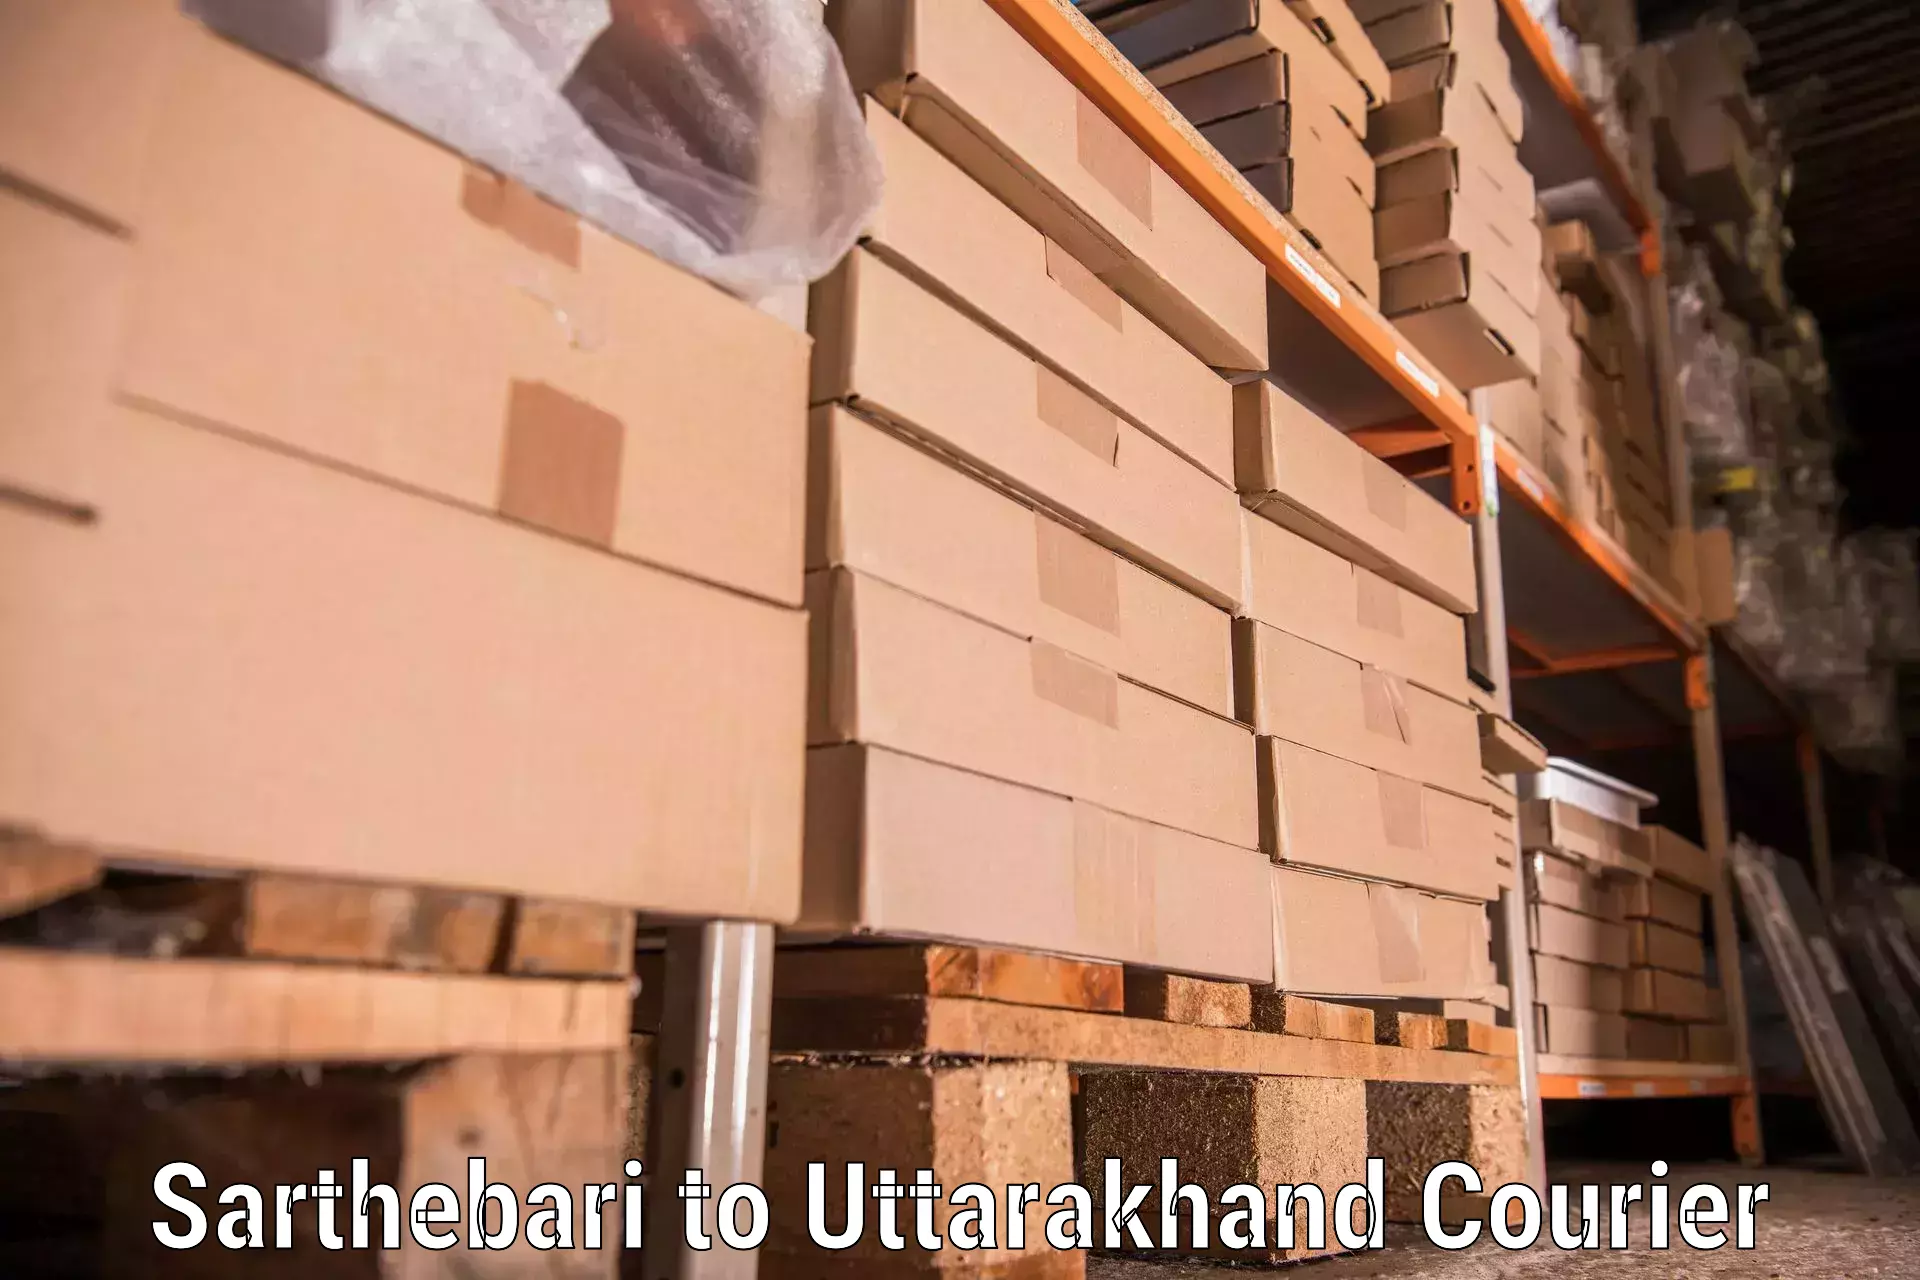 Moving and handling services Sarthebari to Tanakpur